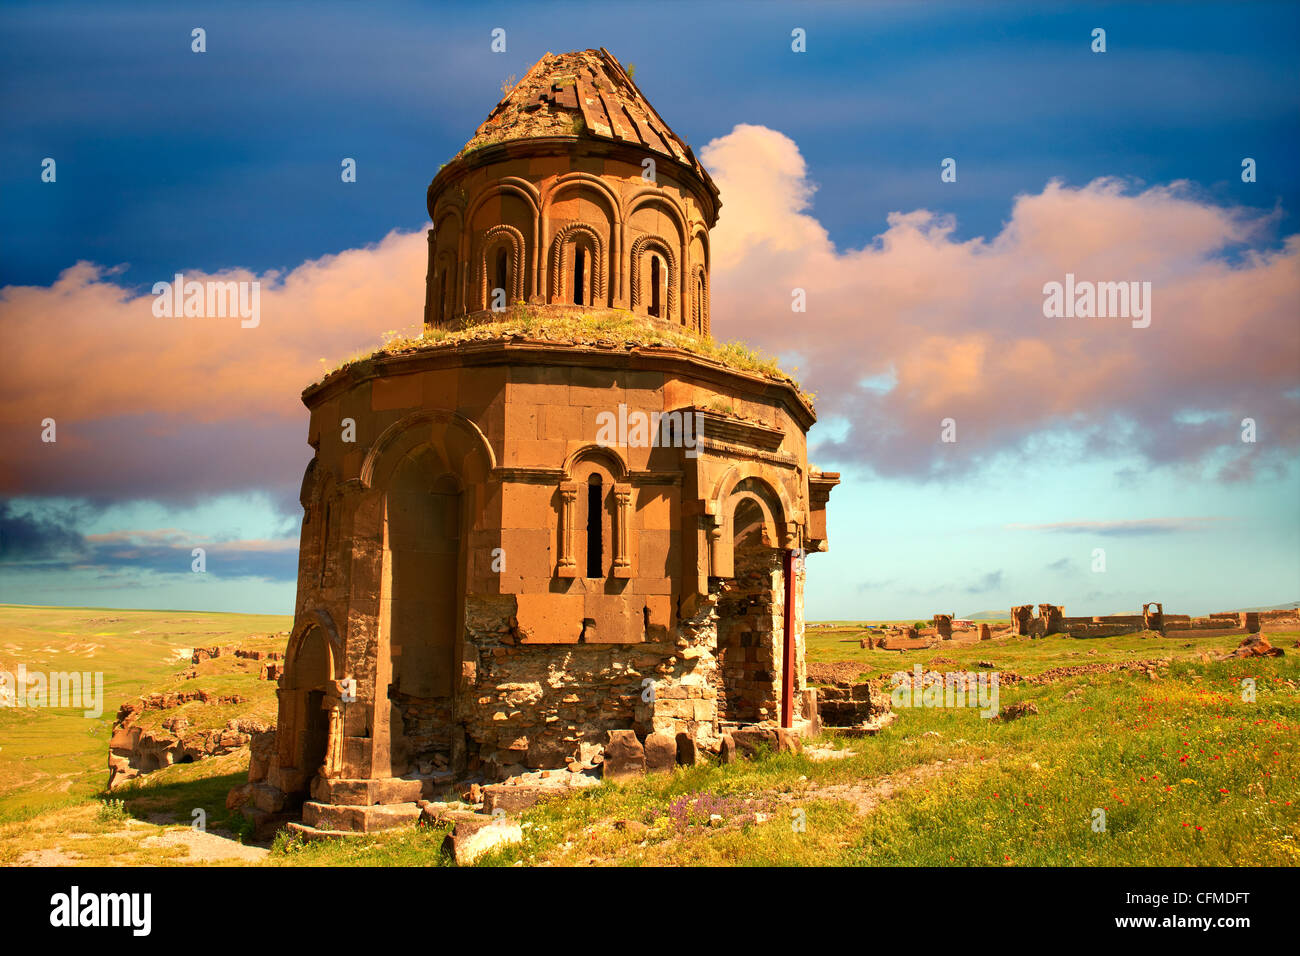 Die armenische Kirche St. Gregory des Abughamrents, Ani archäologische Ort an der alten Seidenstraße, Kars, Anatolien, Türkei Stockfoto